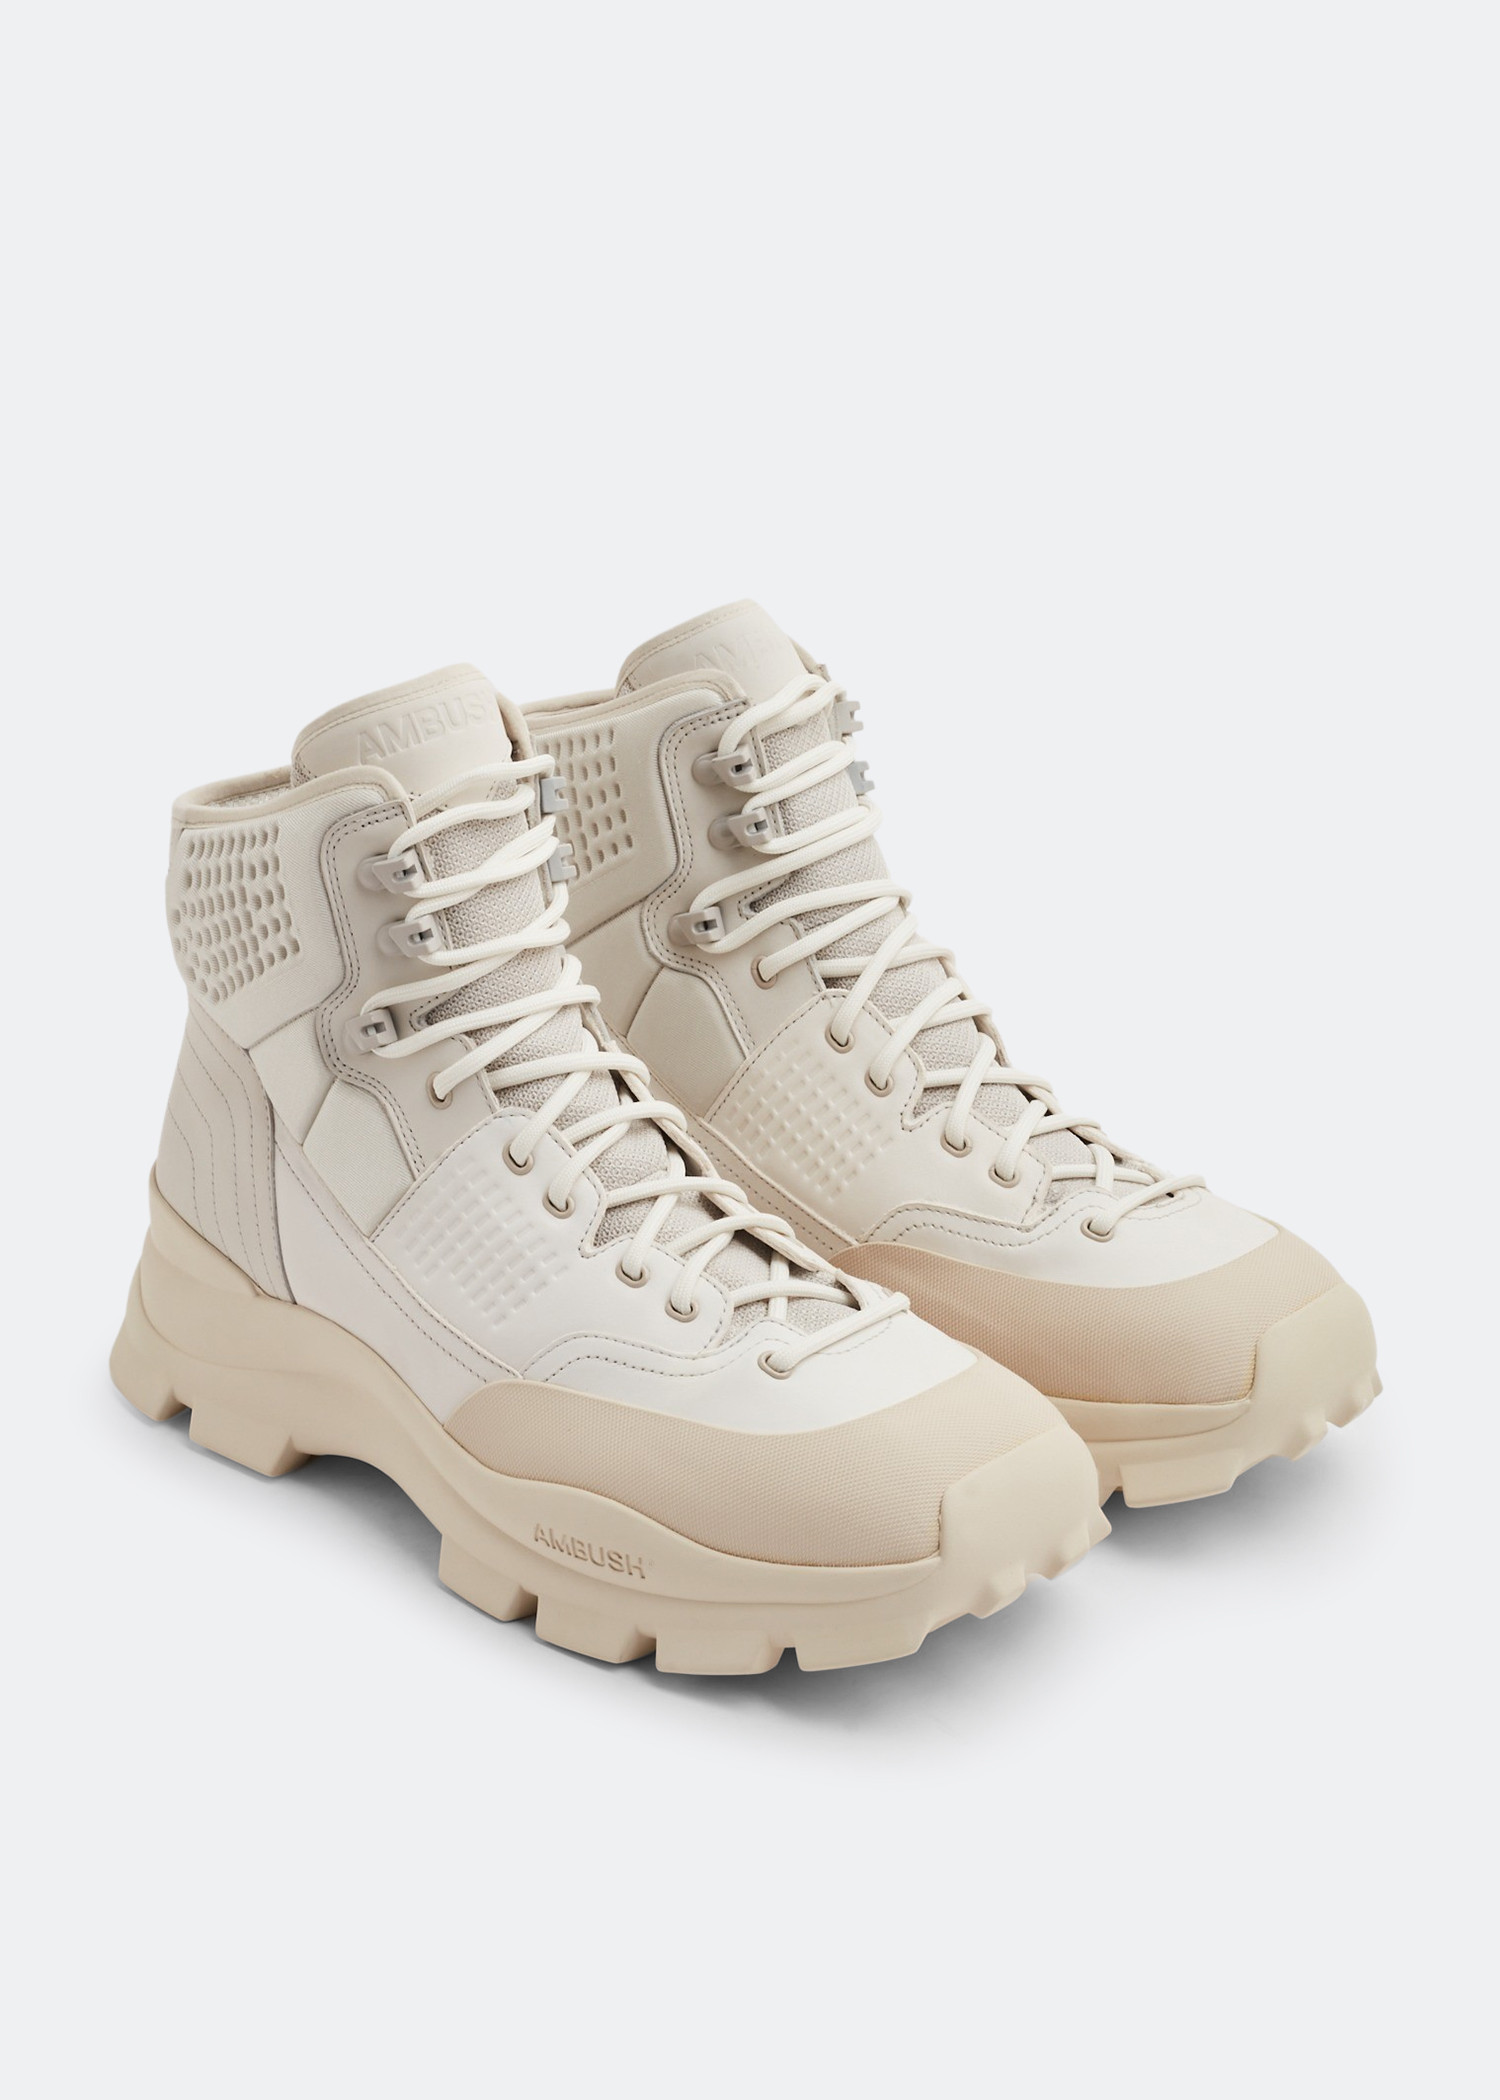 Ambush Hiking boots for Men - White in KSA | Level Shoes